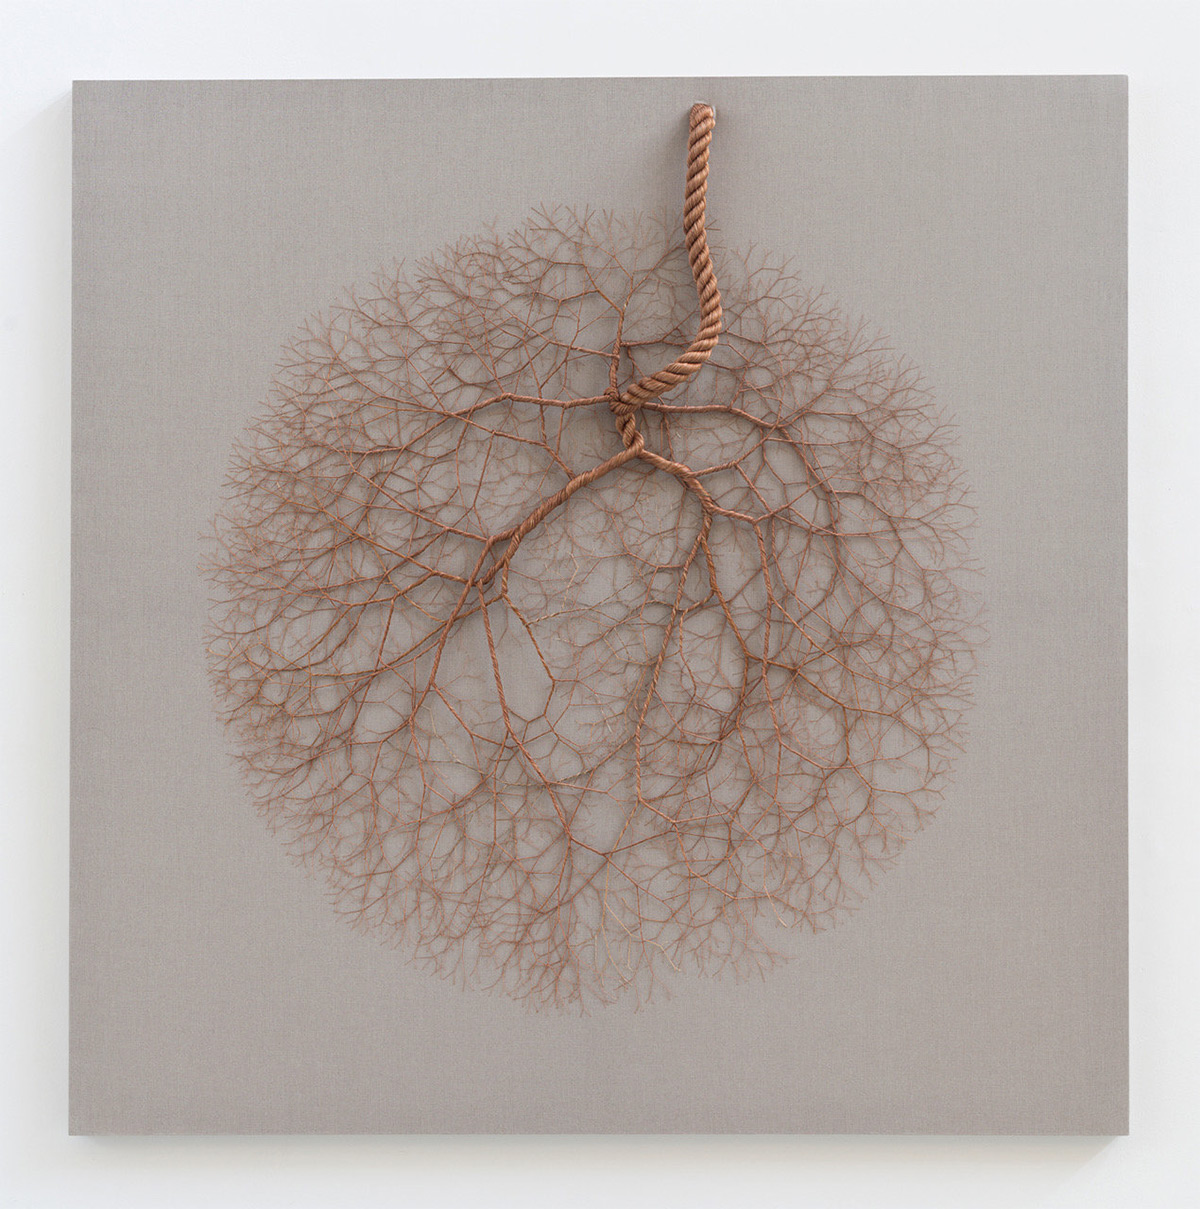 Ciclotramas Hypnotizing Tree And Roots Like Installations By Janaina Mello Landini 22